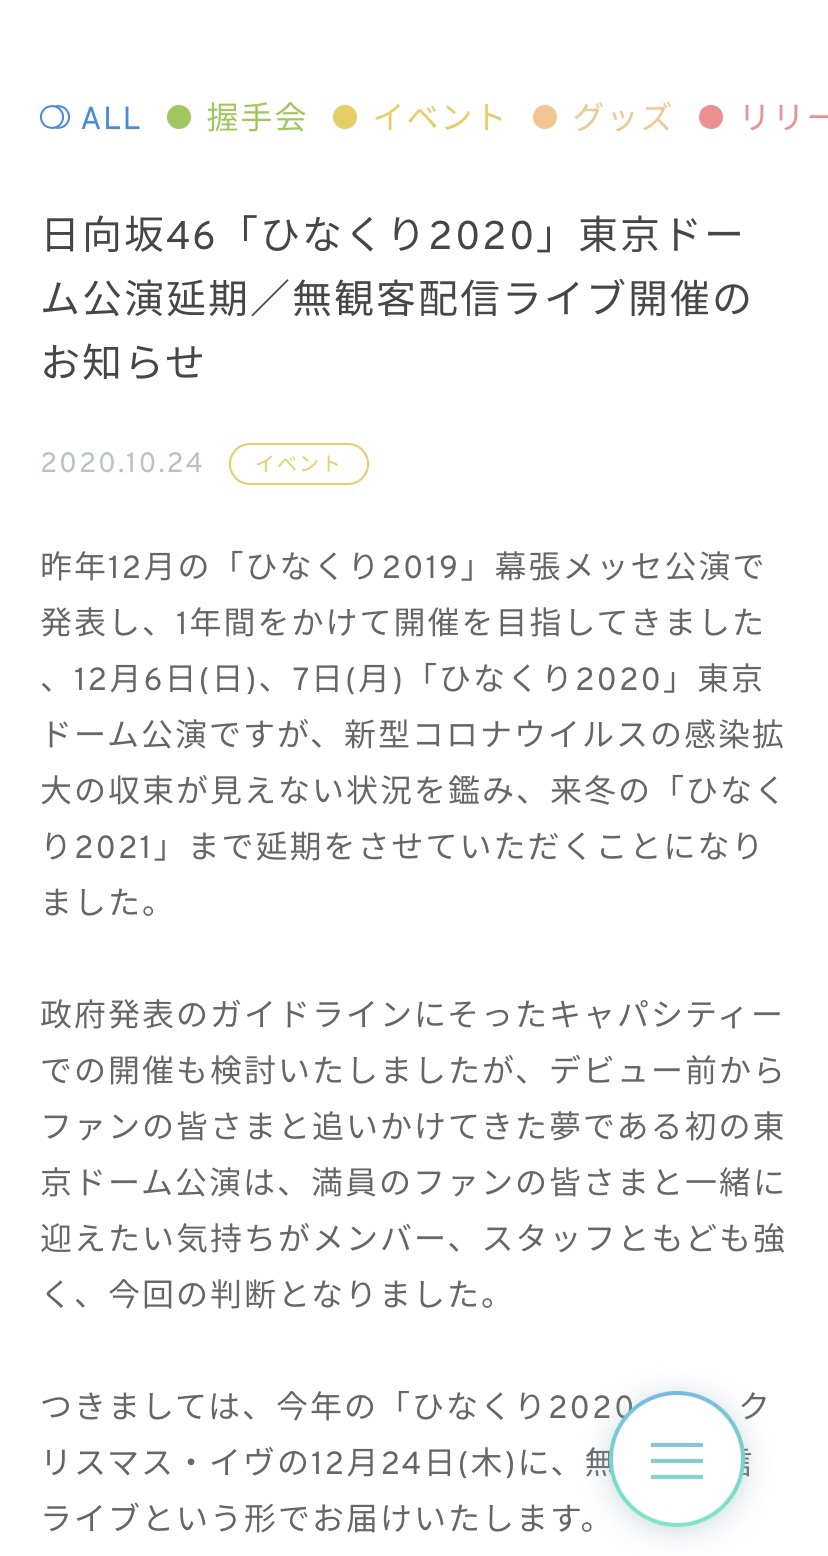 日向坂46「ひなくり2020」東京ドーム公演延期/無観客配信ライブ開催のお知らせ